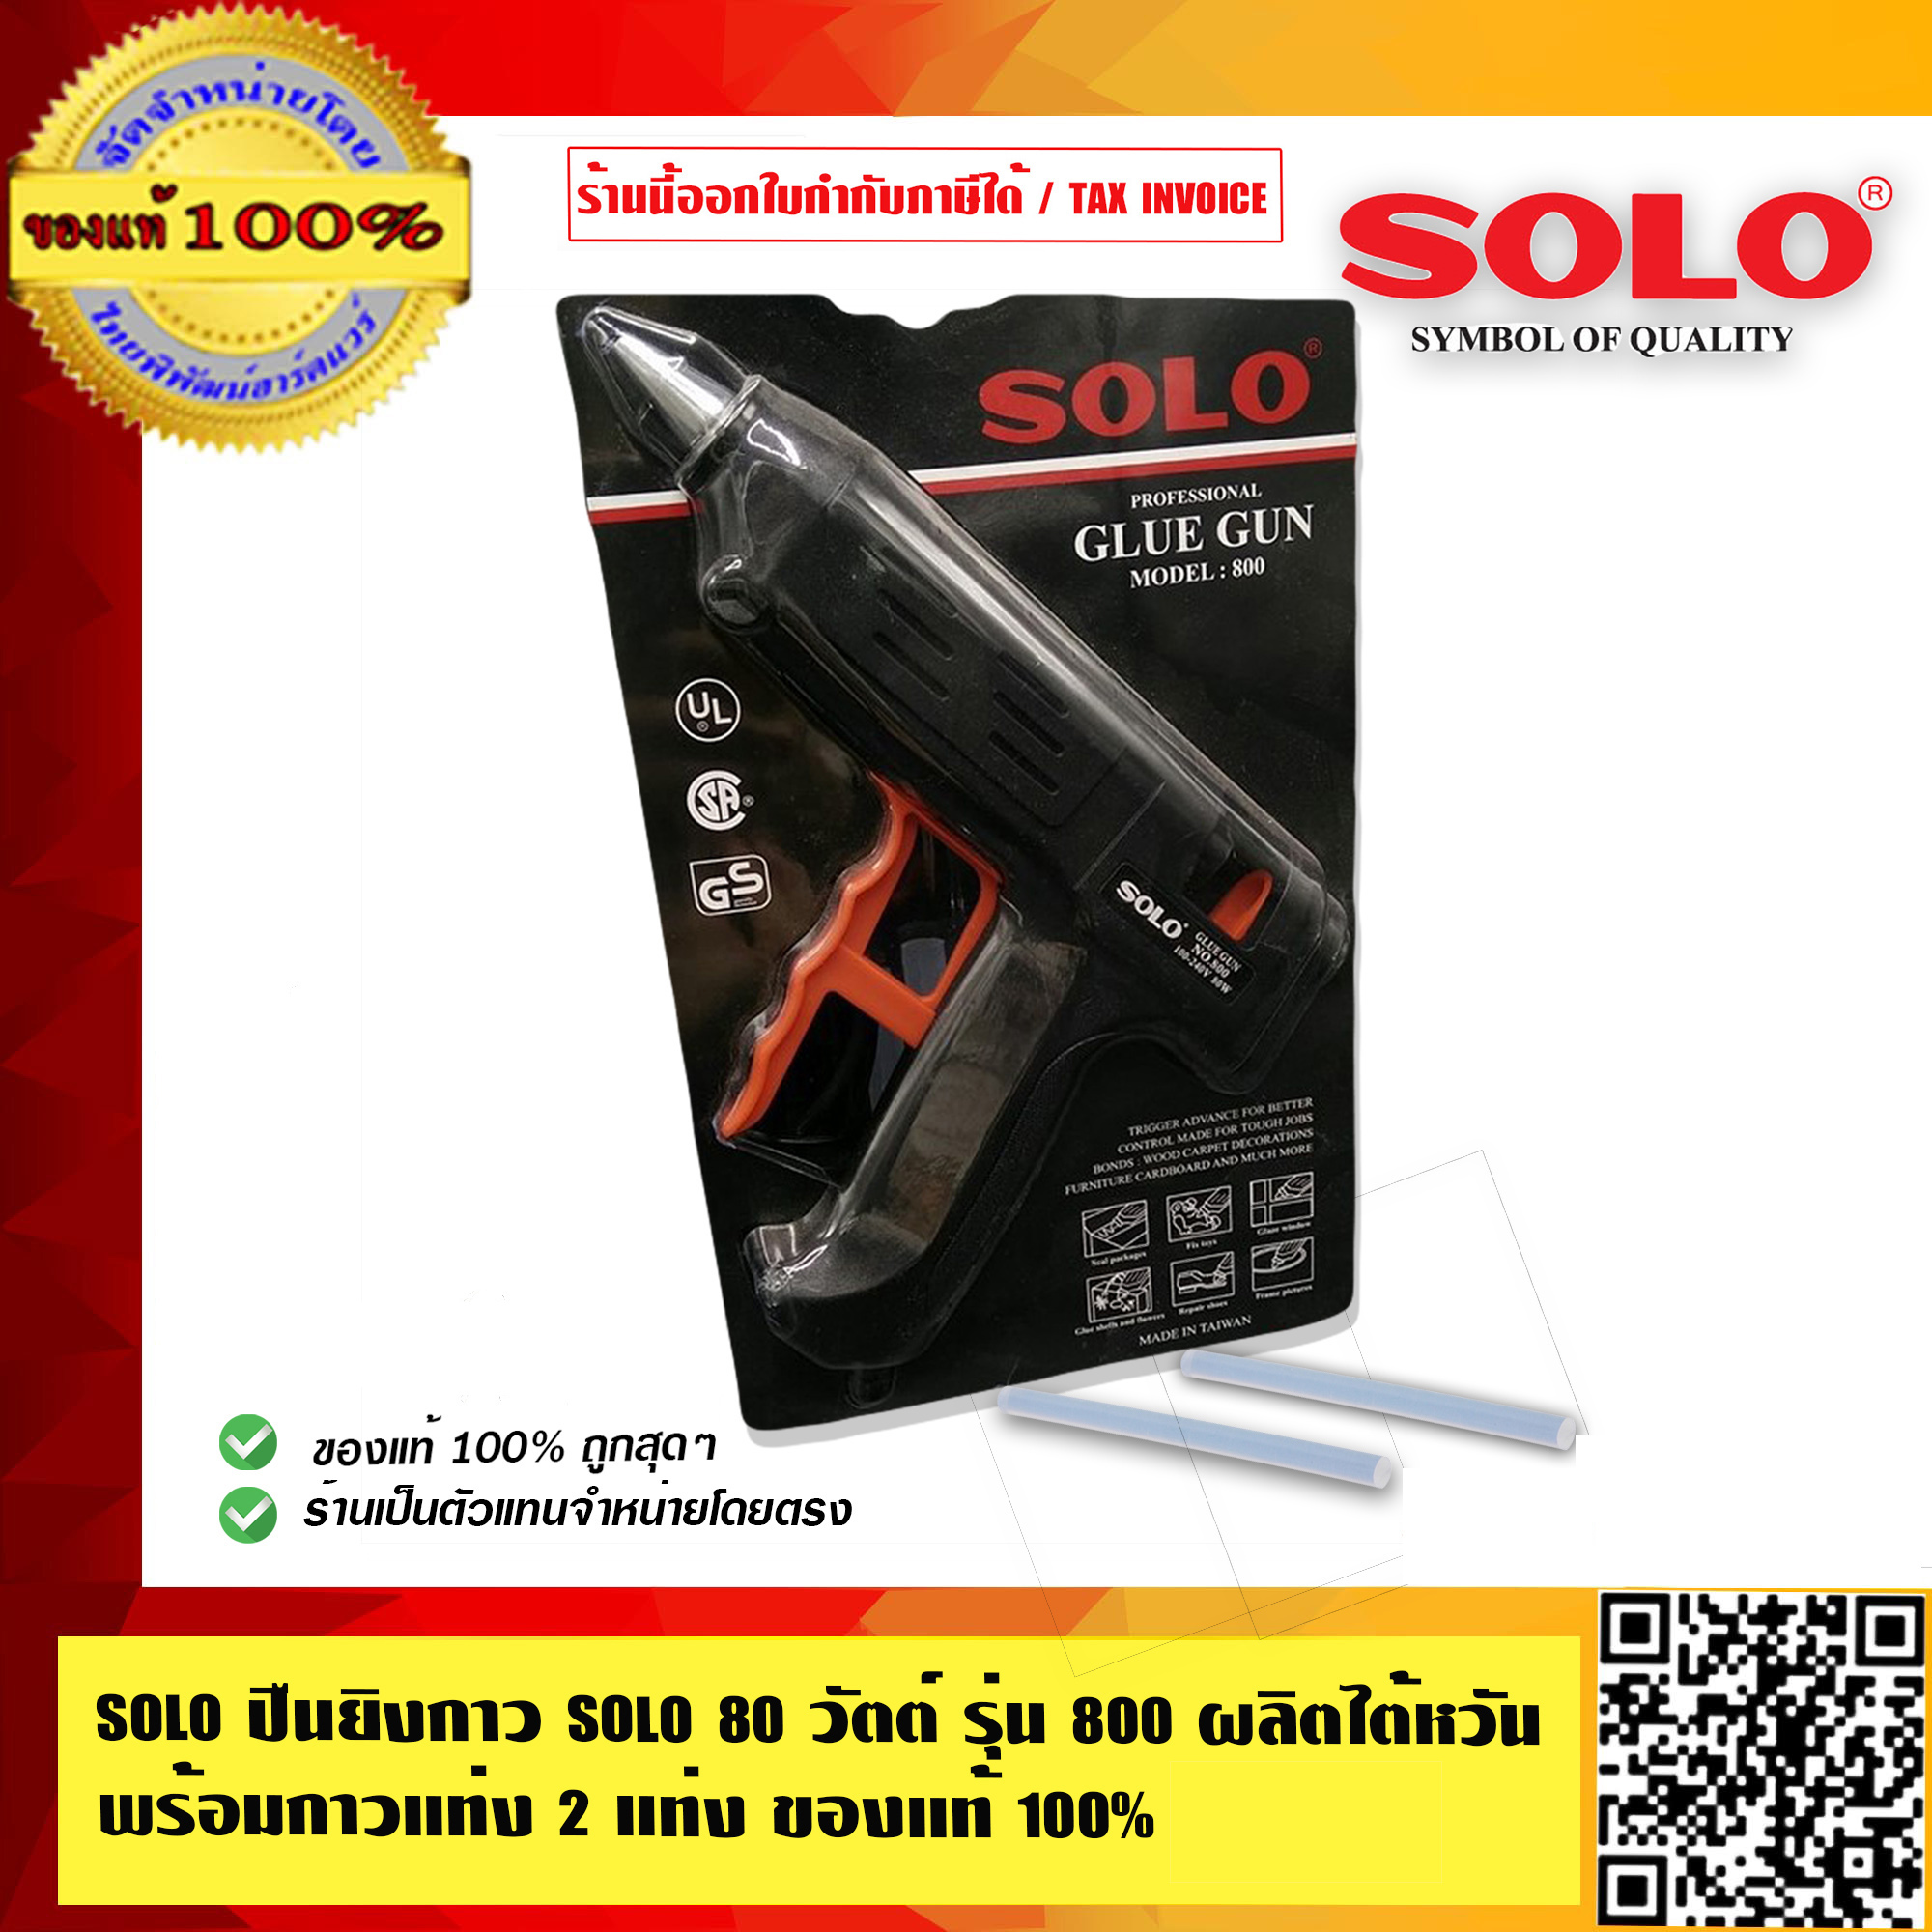 SOLO ปืนยิงกาว โซโล 80 วัตต์ รุ่นงานหนัก รุ่น 800 ผลิตไต้หวัน พร้อมกาวแท่ง 2 แท่ง ของแท้ 100% ร้านเป็นตัวแทนจำหน่ายโดยตรง